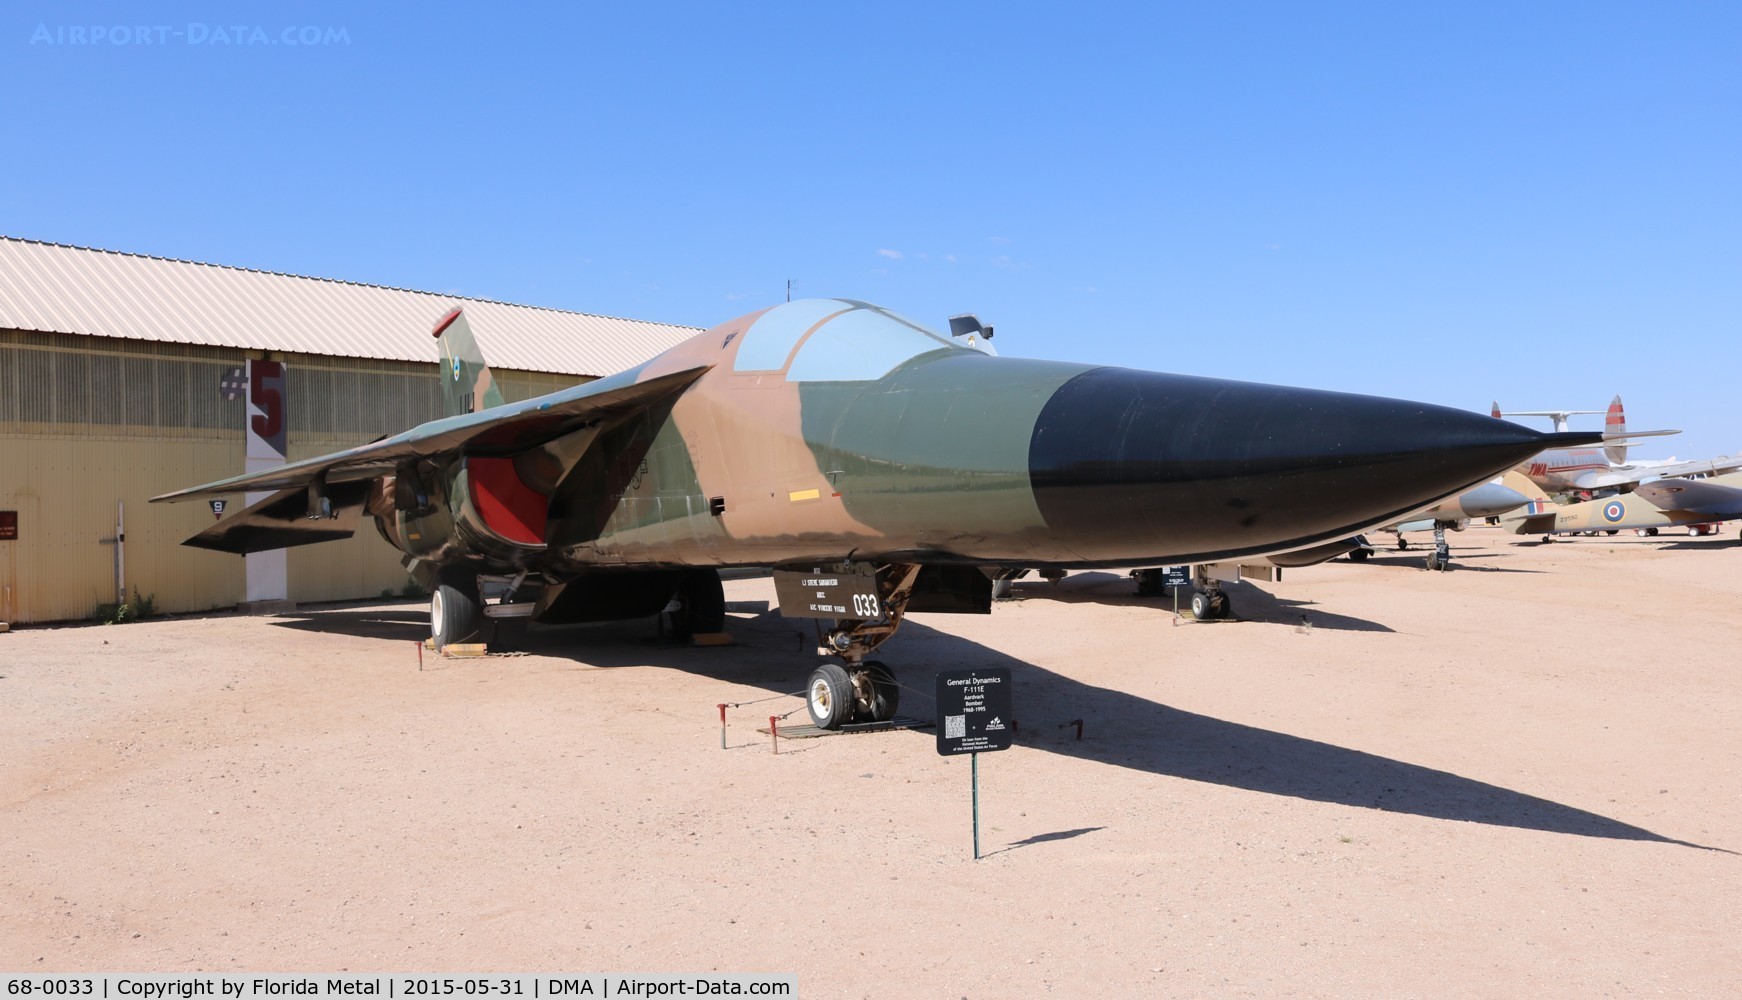 68-0033, 1968 General Dynamics F-111E Aardvark C/N A1-202, F-111E